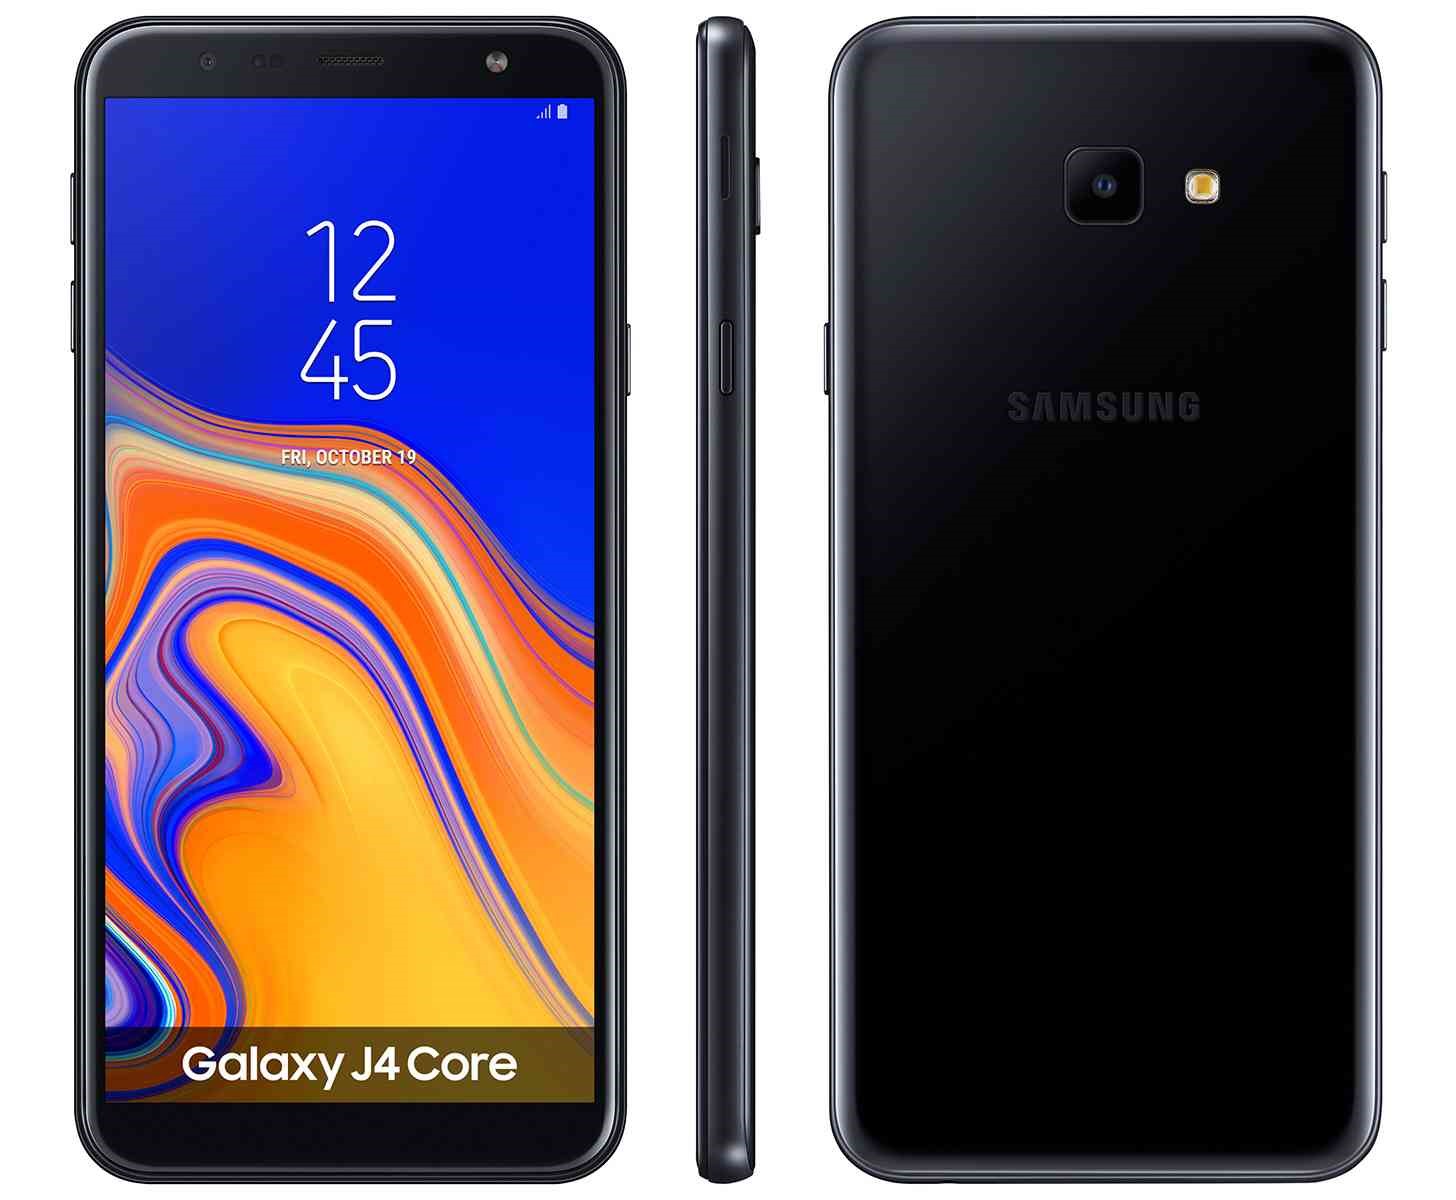 Stigao je i drugi Samsungov Android Go mobitel - Galaxy J4 Core - Mobiteli  @ Bug.hr